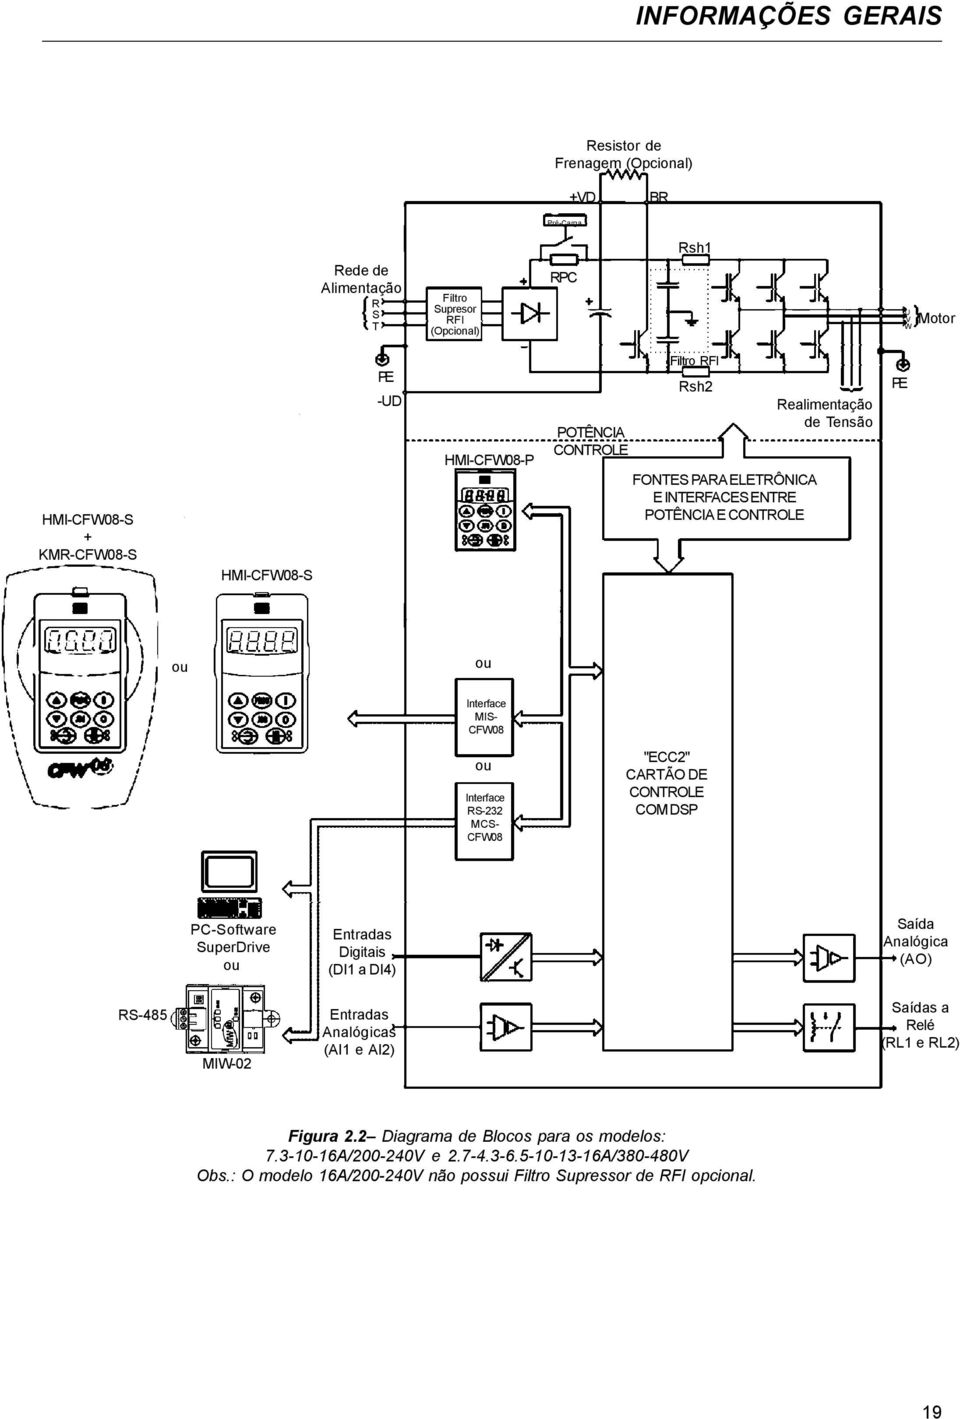 RS-232 MCS- CFW08 "ECC2" CARTÃO DE CONTROLE COM DSP PC-Software SuperDrive ou Entradas Digitais (DI1 a DI4) Saída Analógica (AO) RS-485 MIW-02 Entradas Analógicas (AI1 e AI2) Saídas a